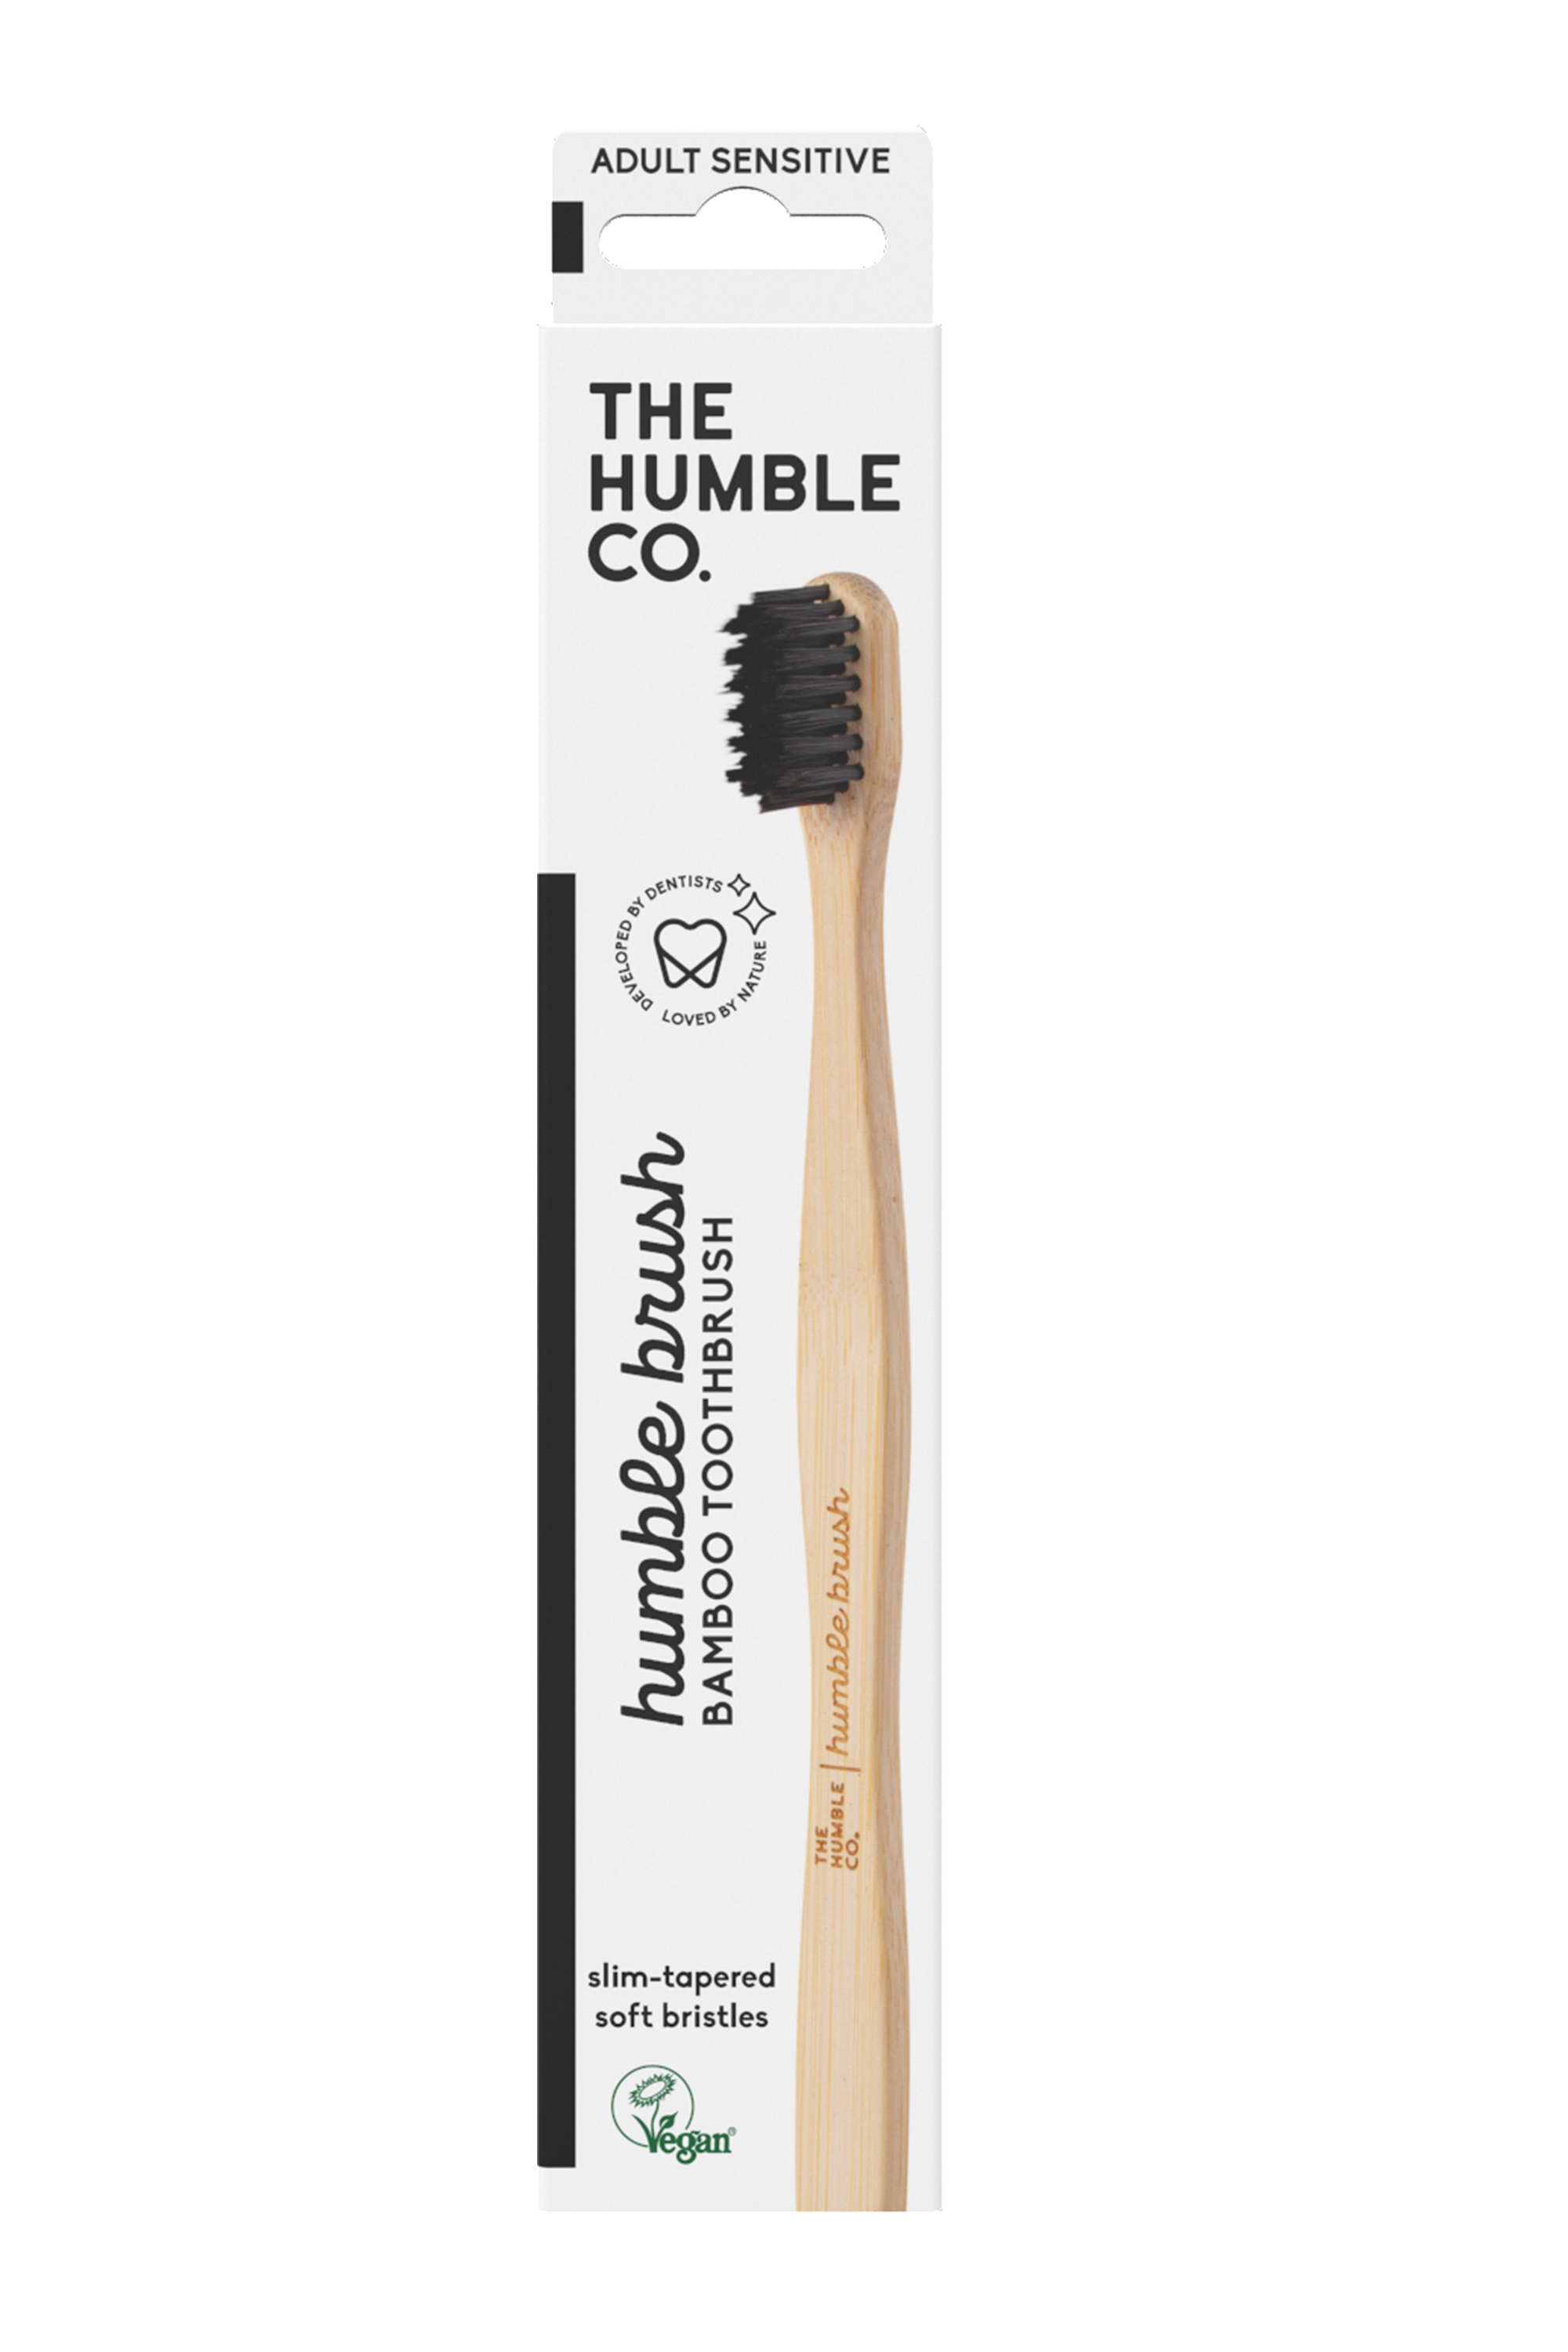 The Humble Co. Humble Brush Adult Sensitive, Black, 1 stk